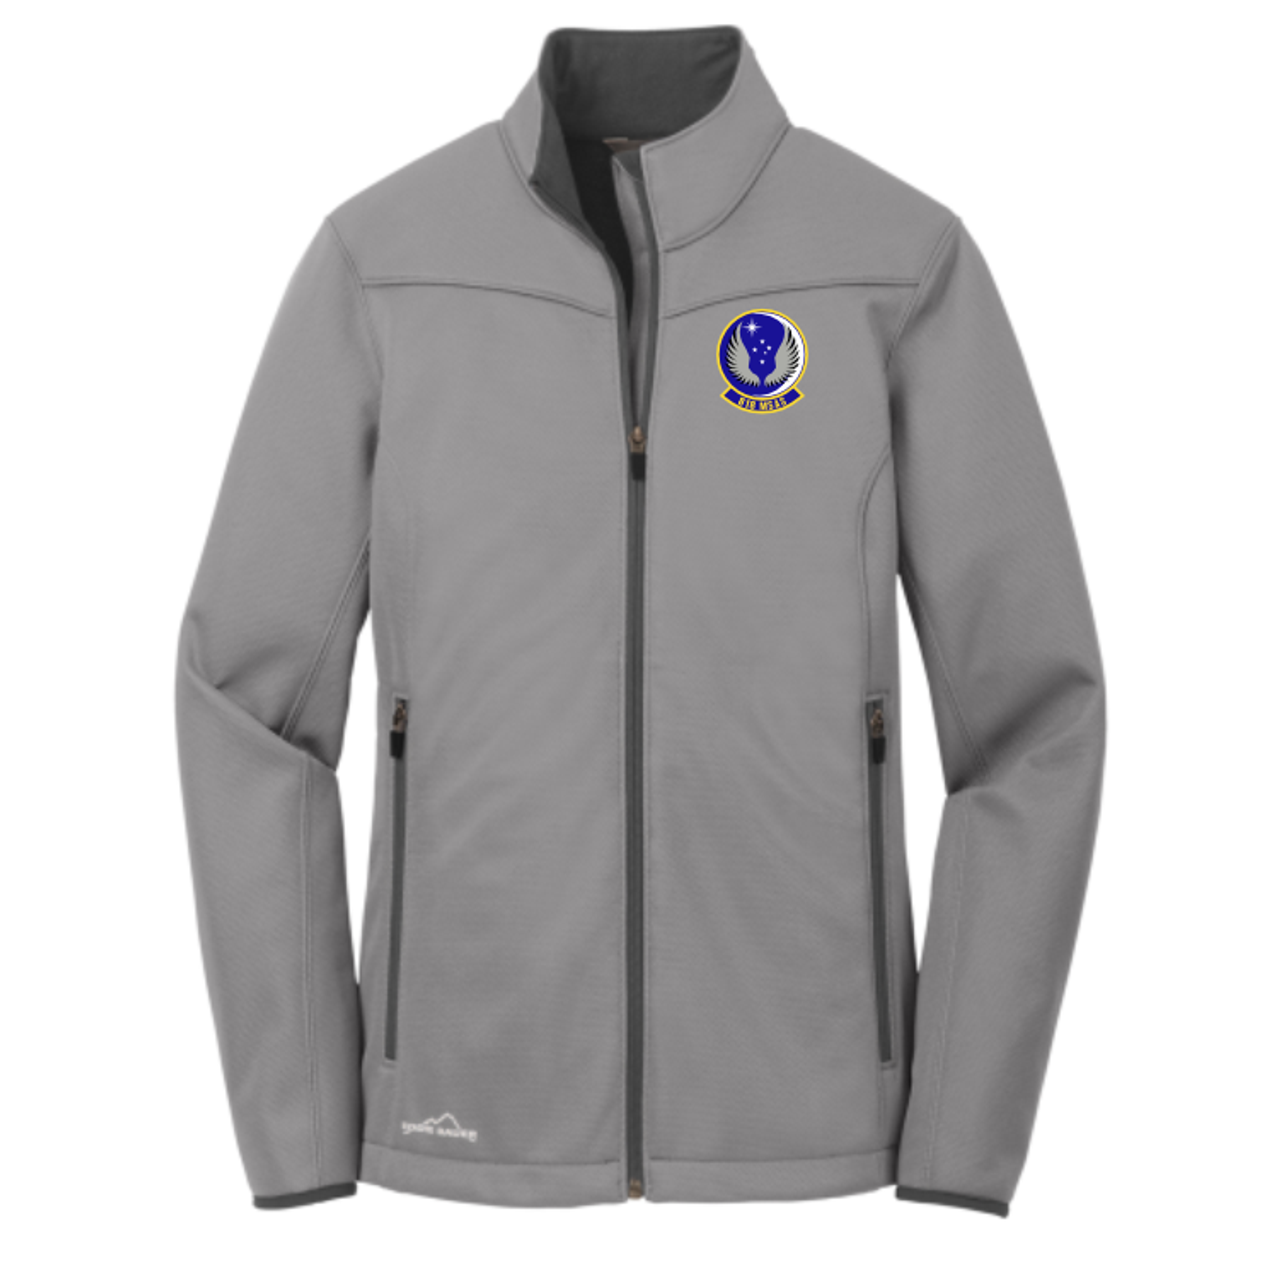 818 MSAS Eddie Bauer® Weather-Resist Soft Shell Jacket, Gray